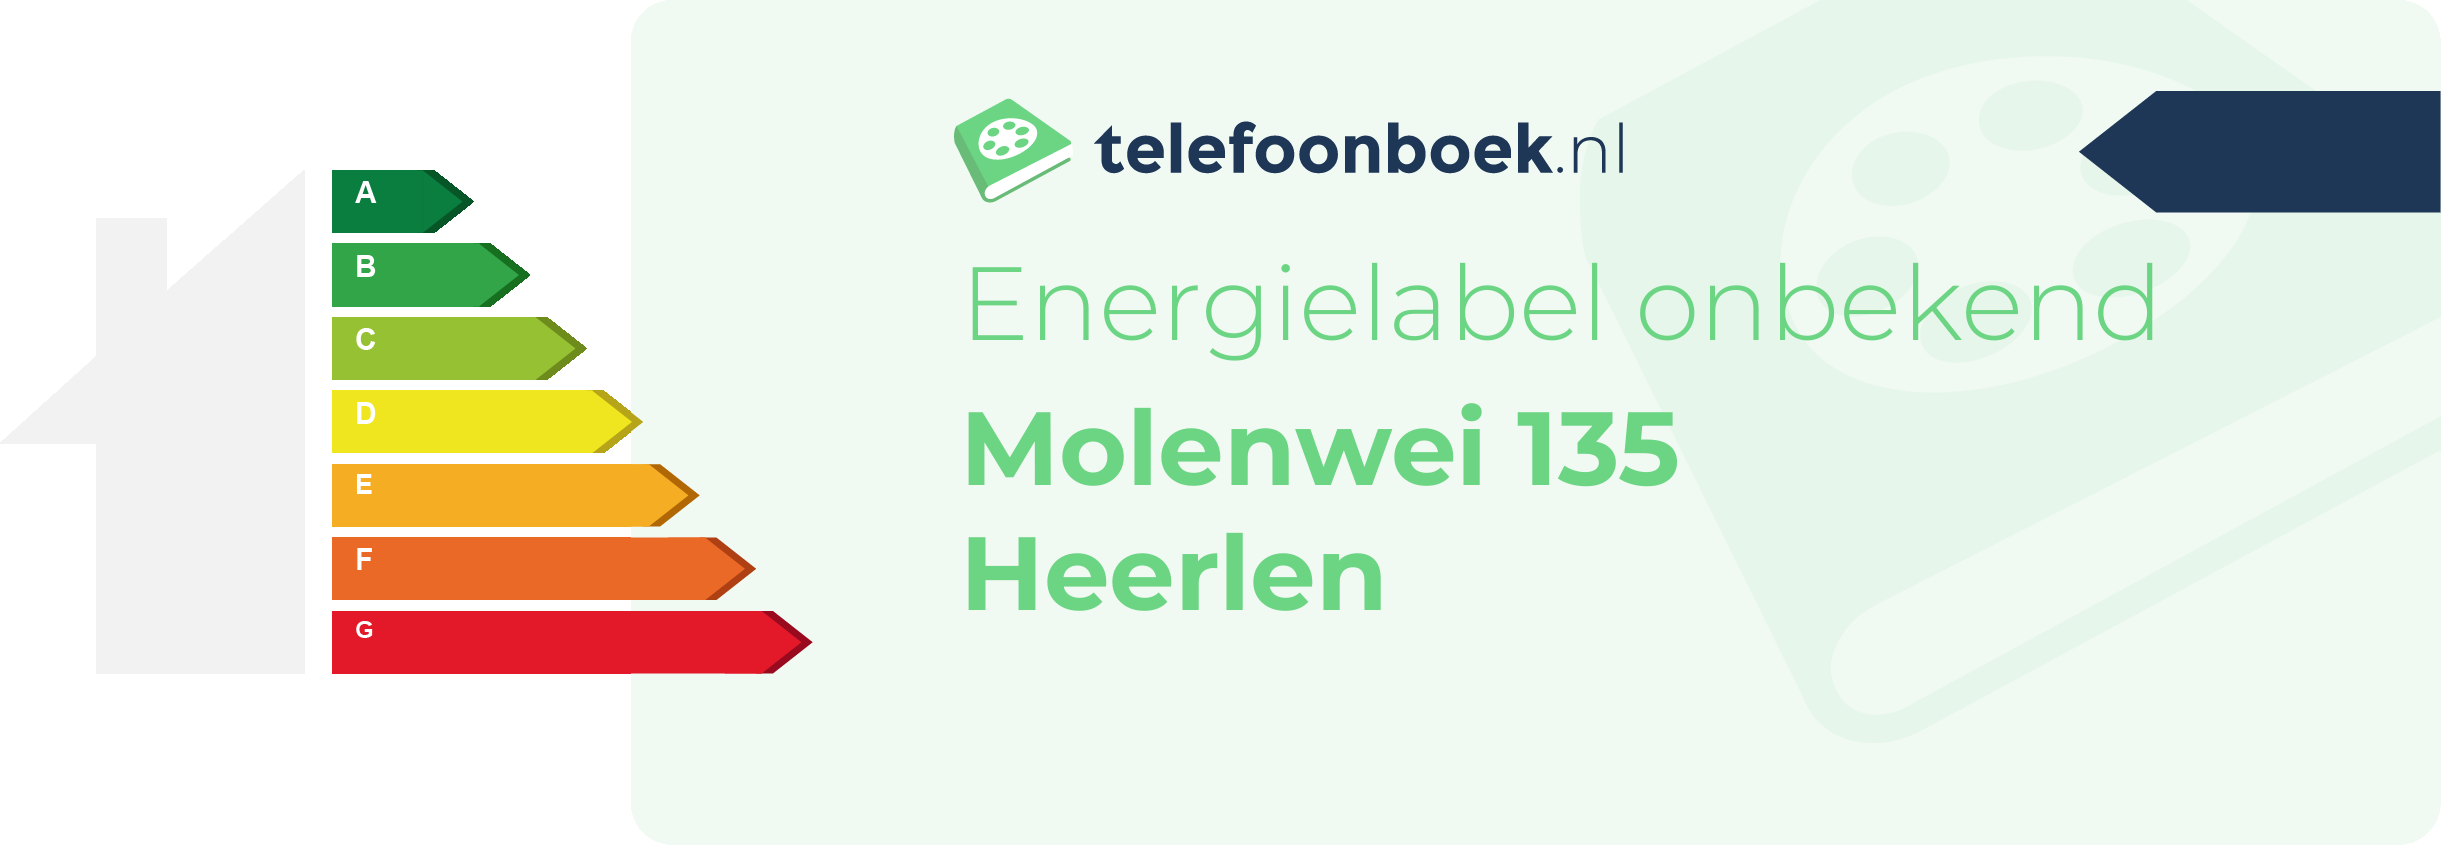 Energielabel Molenwei 135 Heerlen